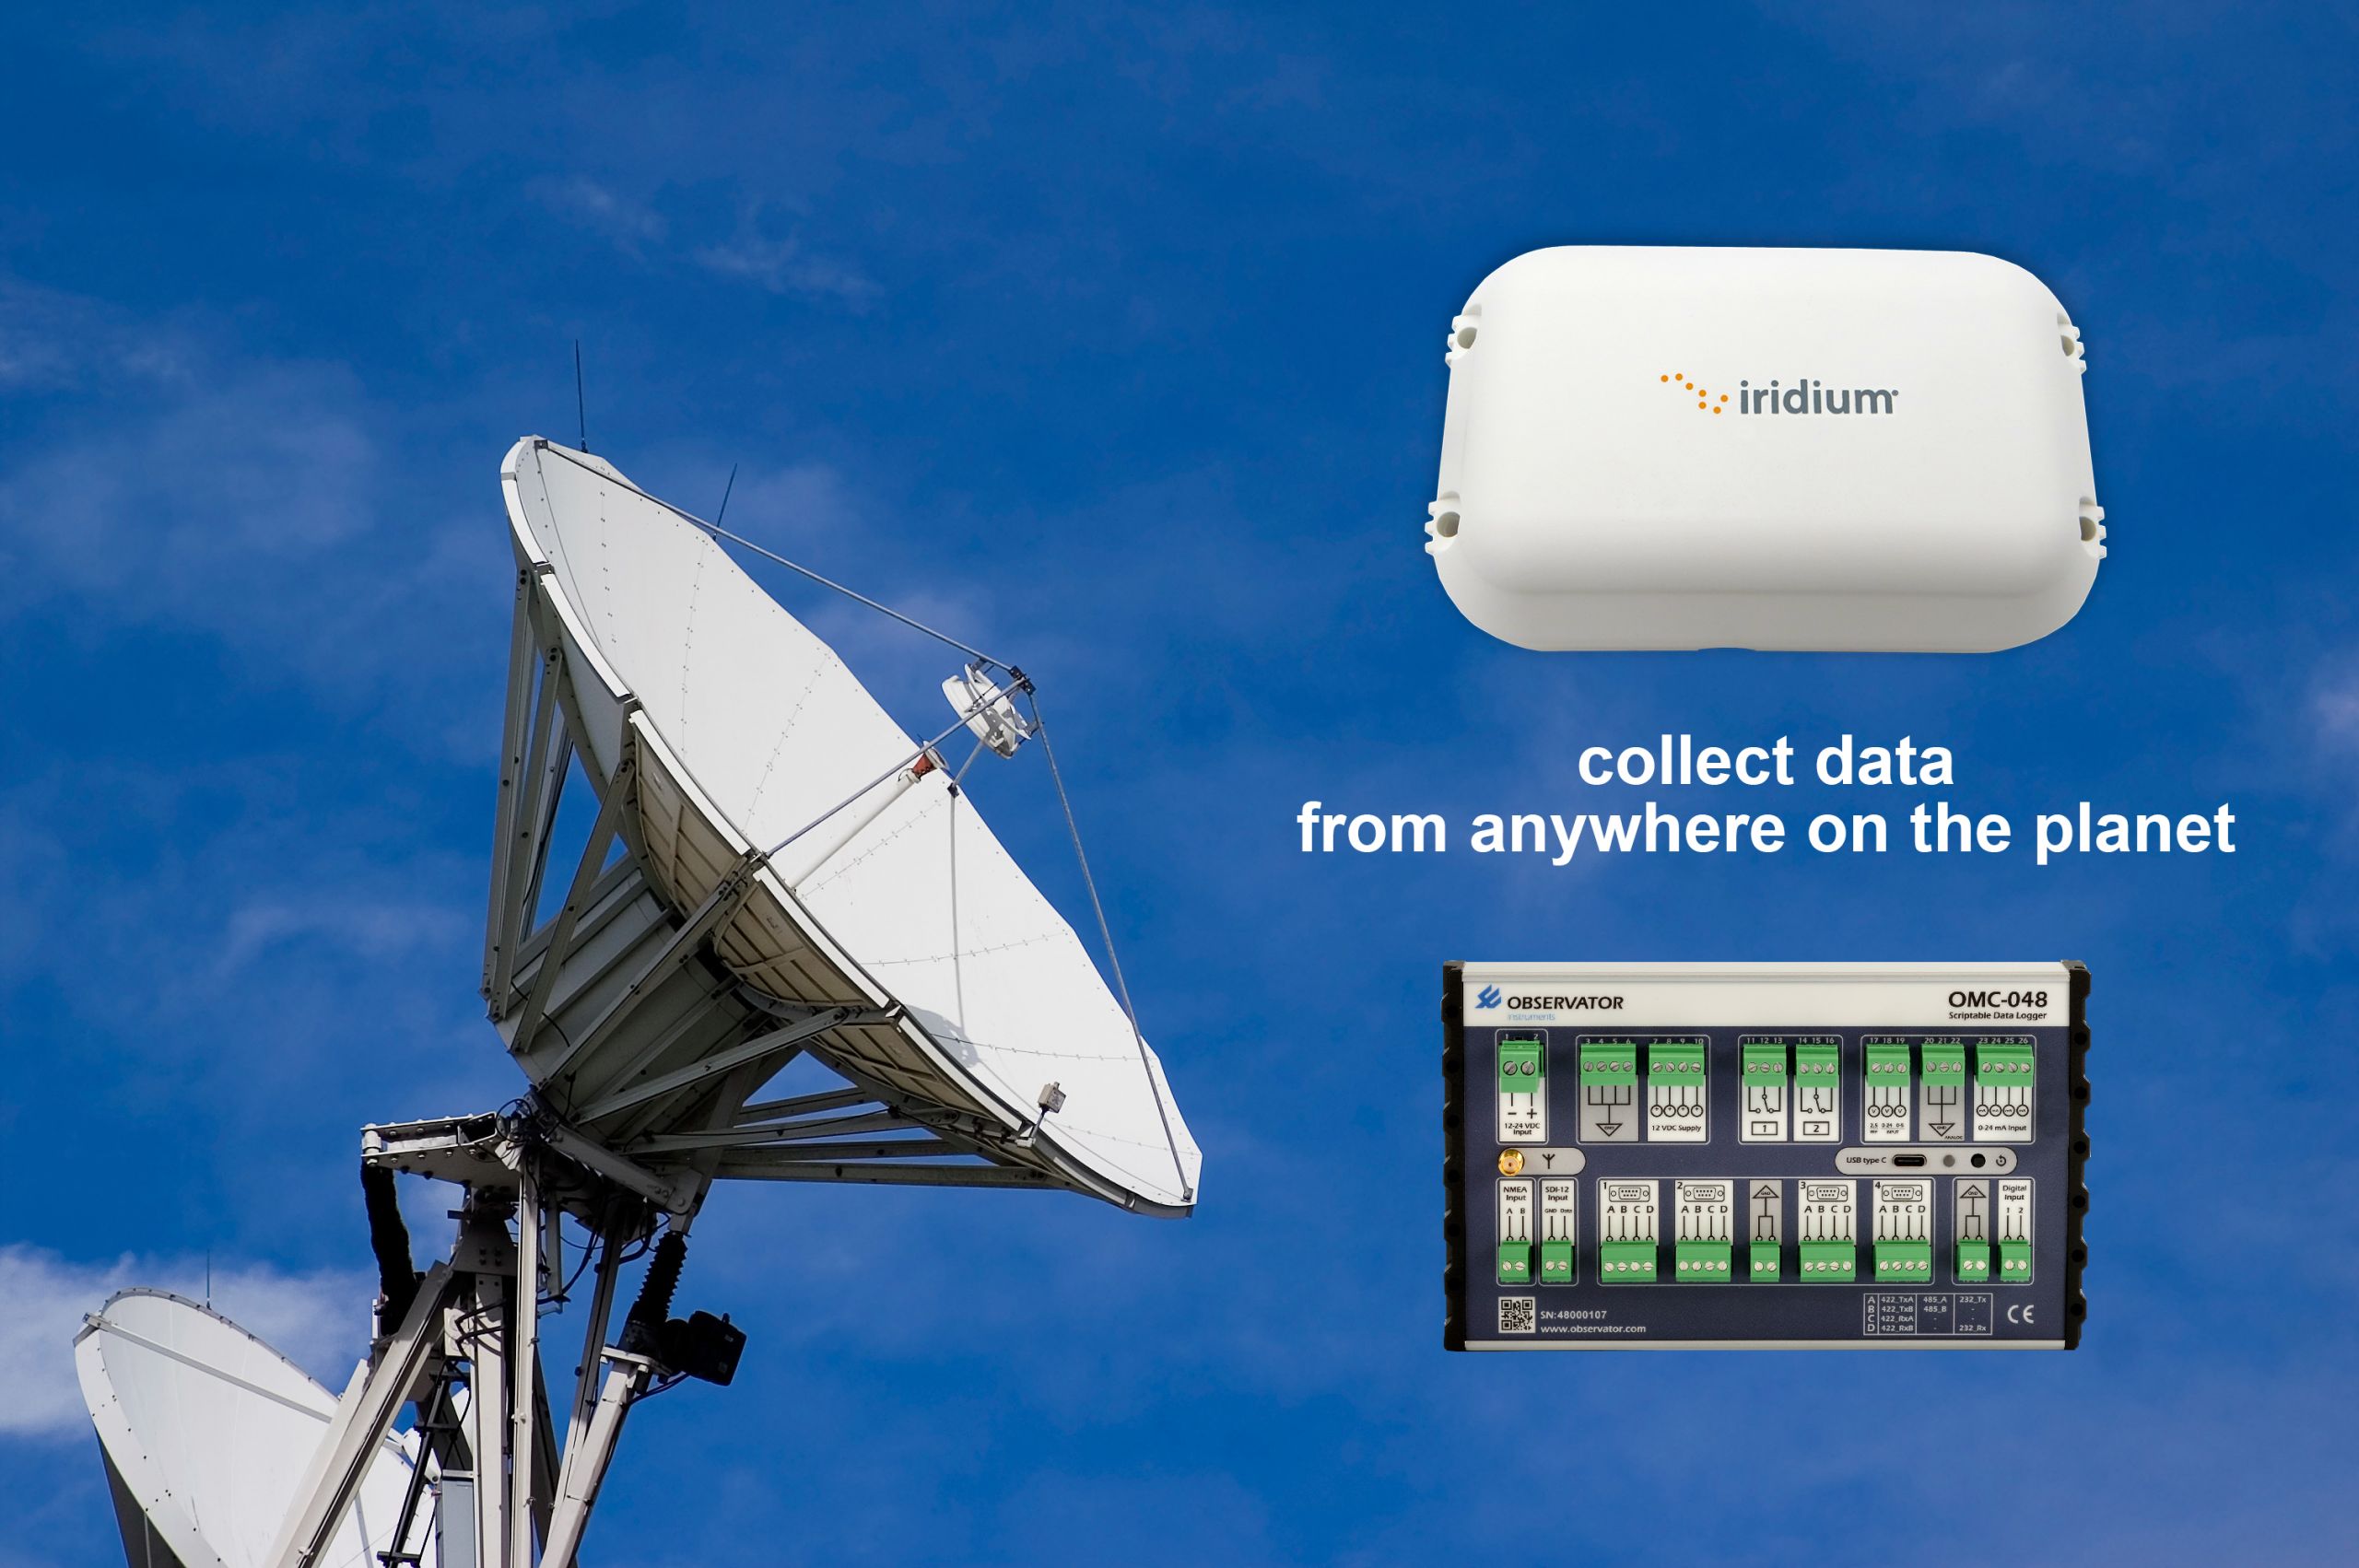 Observator introduceert Iridium-ondersteuning voor OMC-048 datalogger